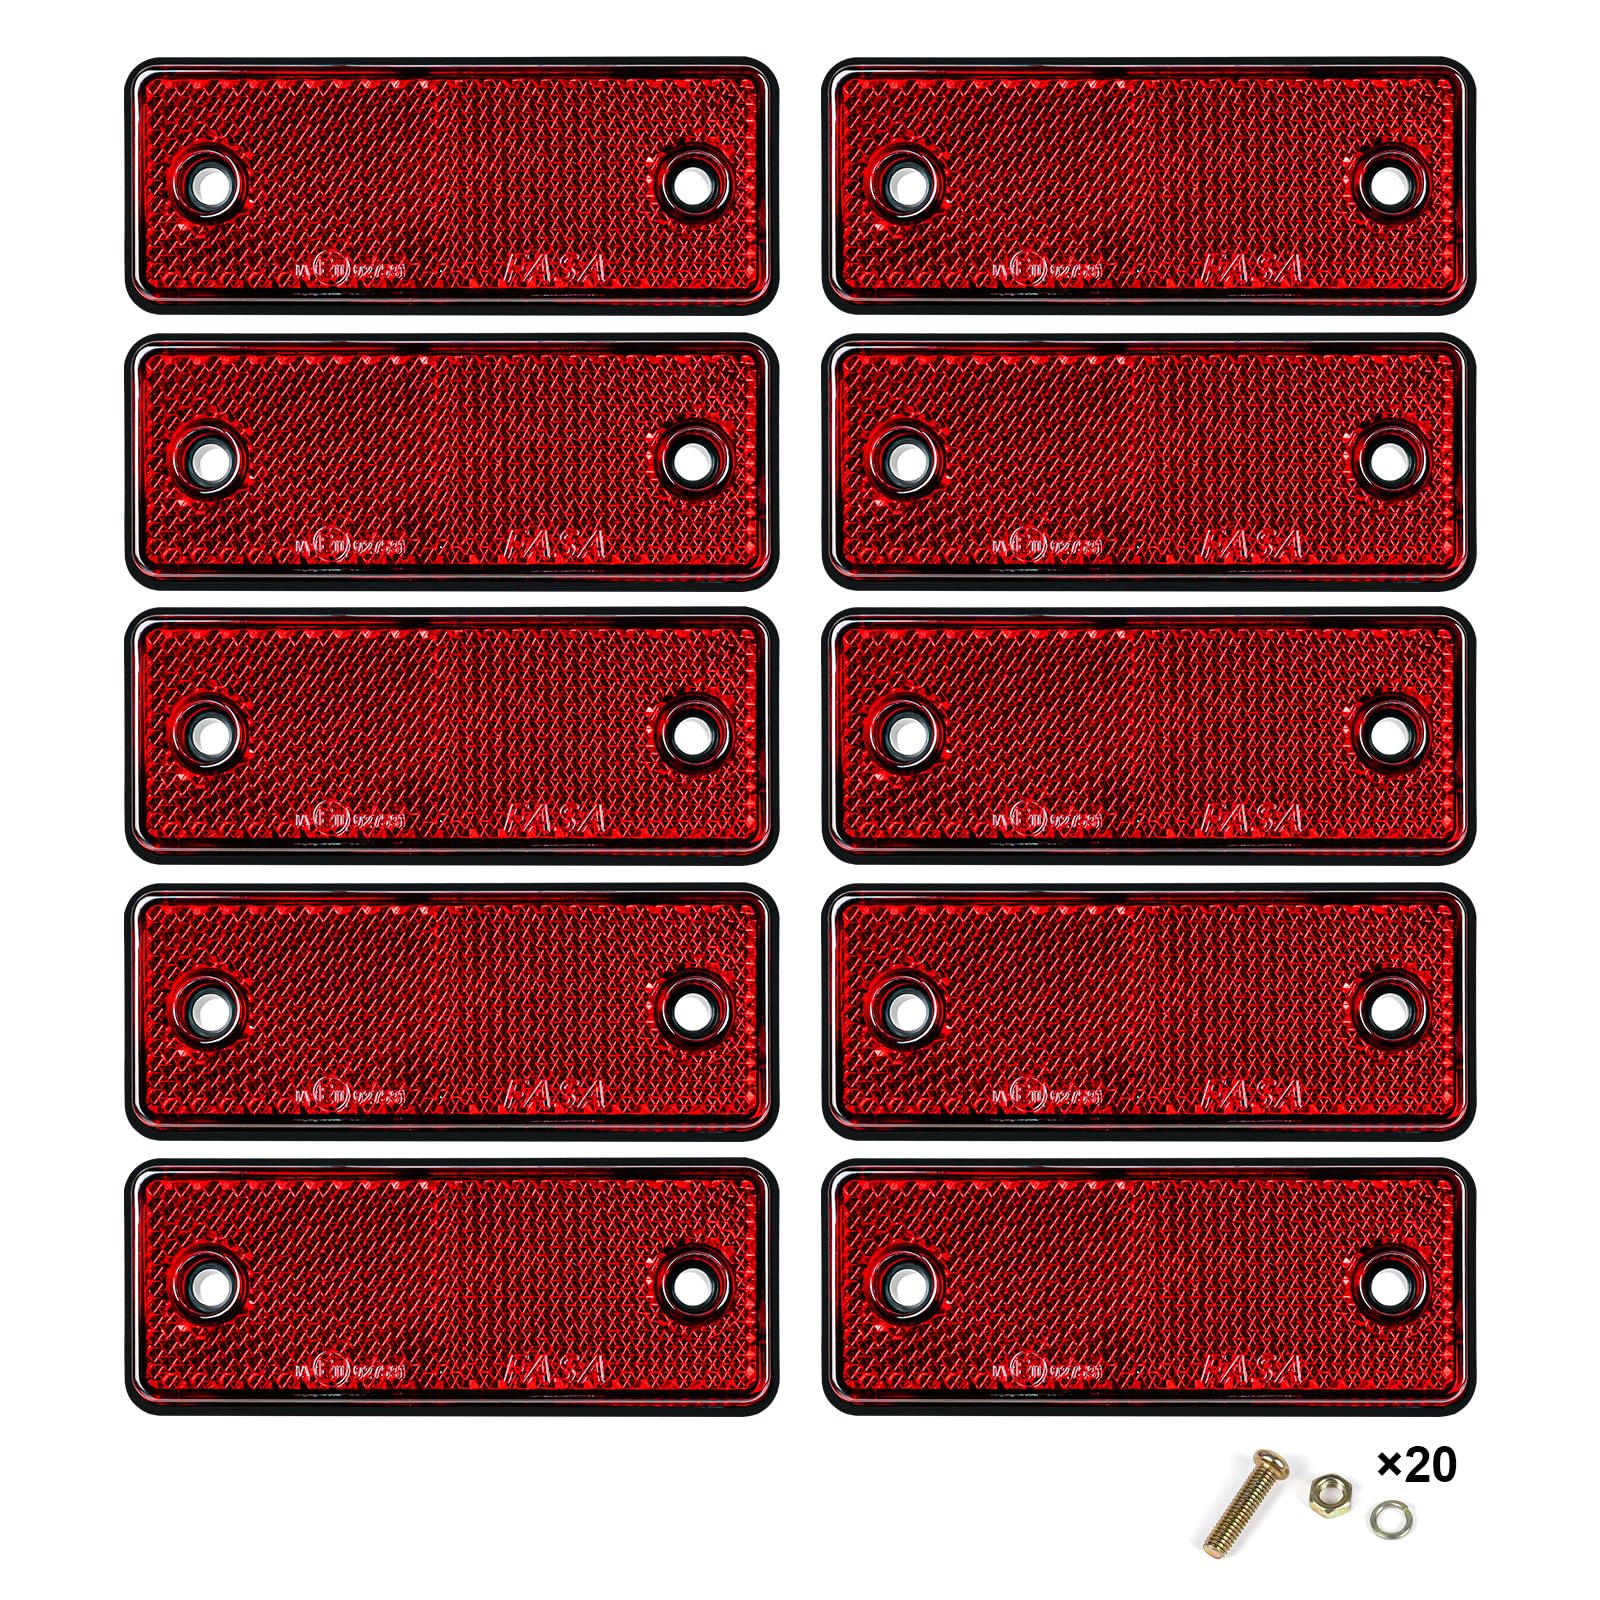 Yinaolan 10 Stück rote rechteckige Reflektoren zum Anschrauben, E11-Zulassung Verkehrssicherheitstorpfosten, hintere Reflektoren für Anhänger Wohnwagen LKW Traktor Boot LKW Motorrad Zauntorpfosten von Yinaolan